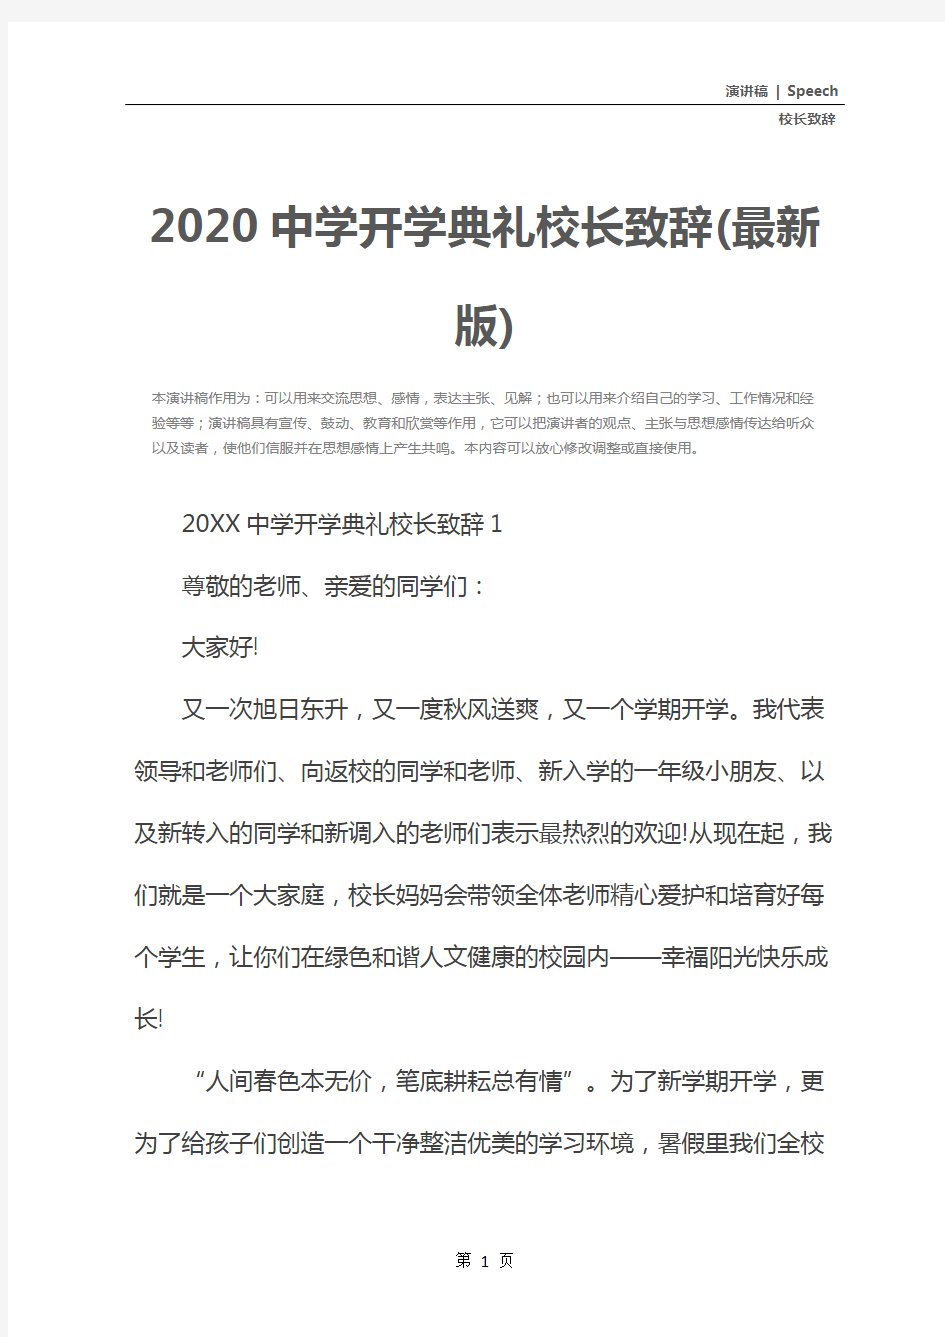 2020中学开学典礼校长致辞(最新版)